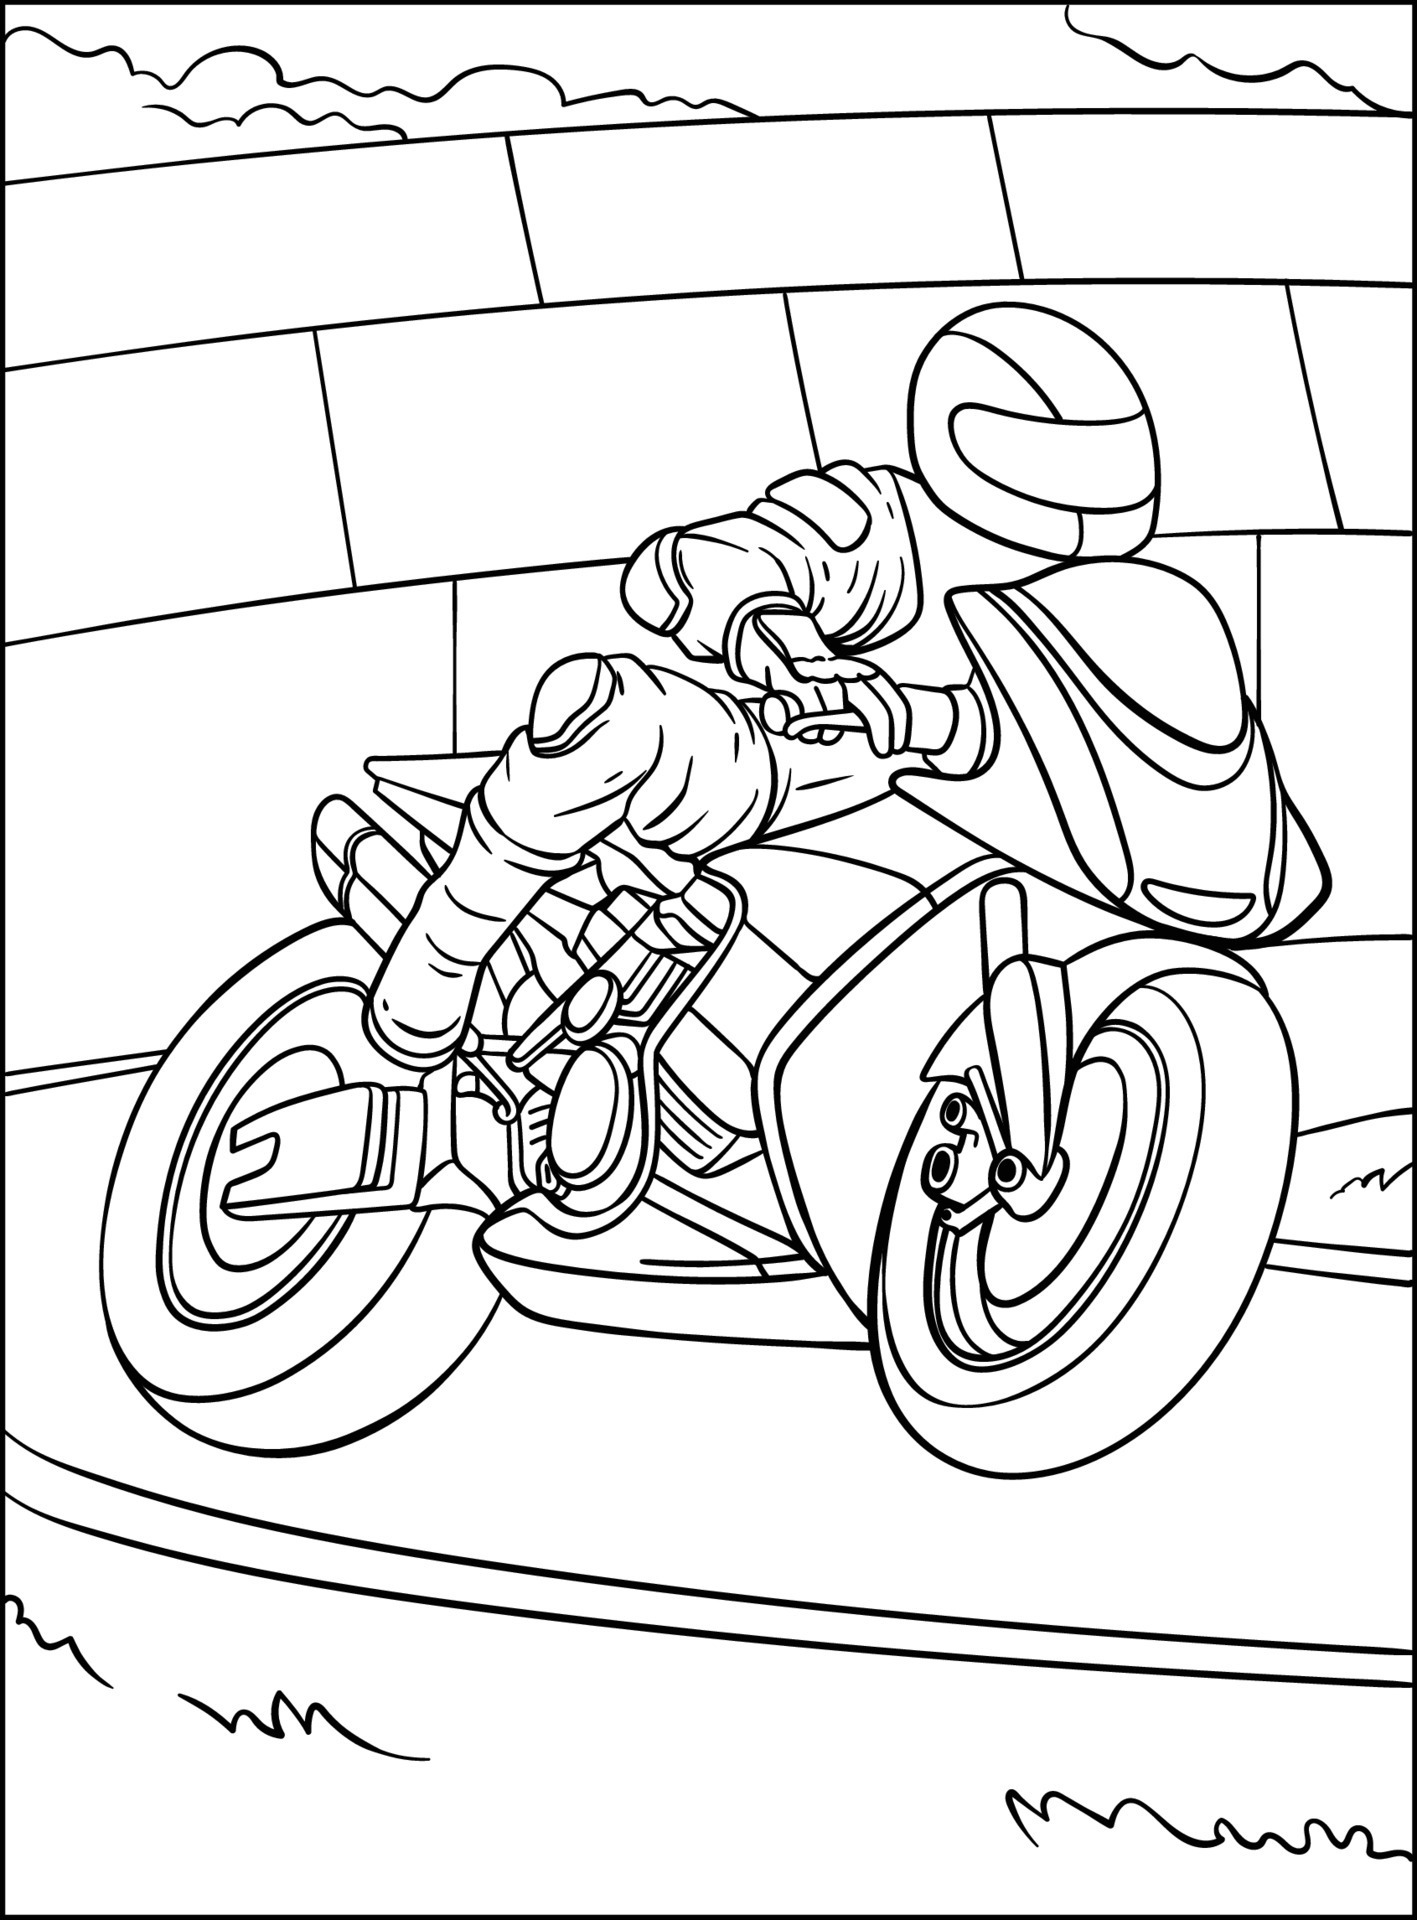 Desenhos para colorir de desenho de uma corrida de moto esportiva